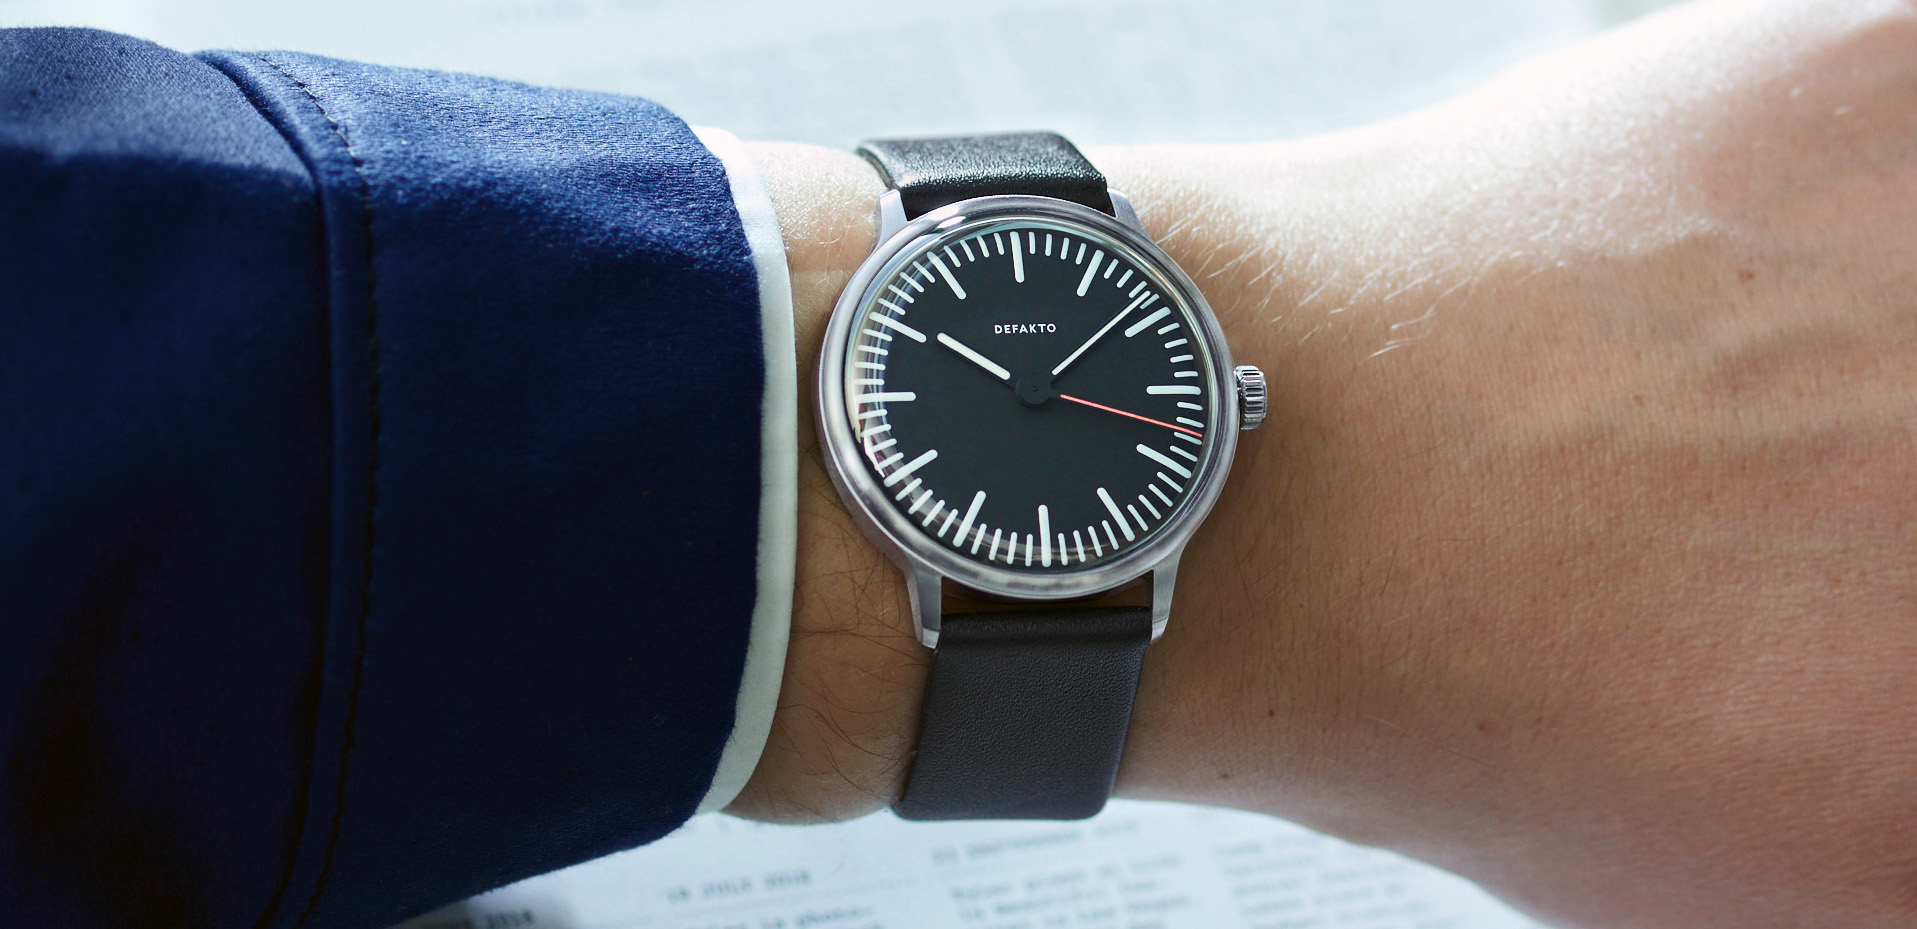 bauhaus watch design defakto transit german design award minimal uhr